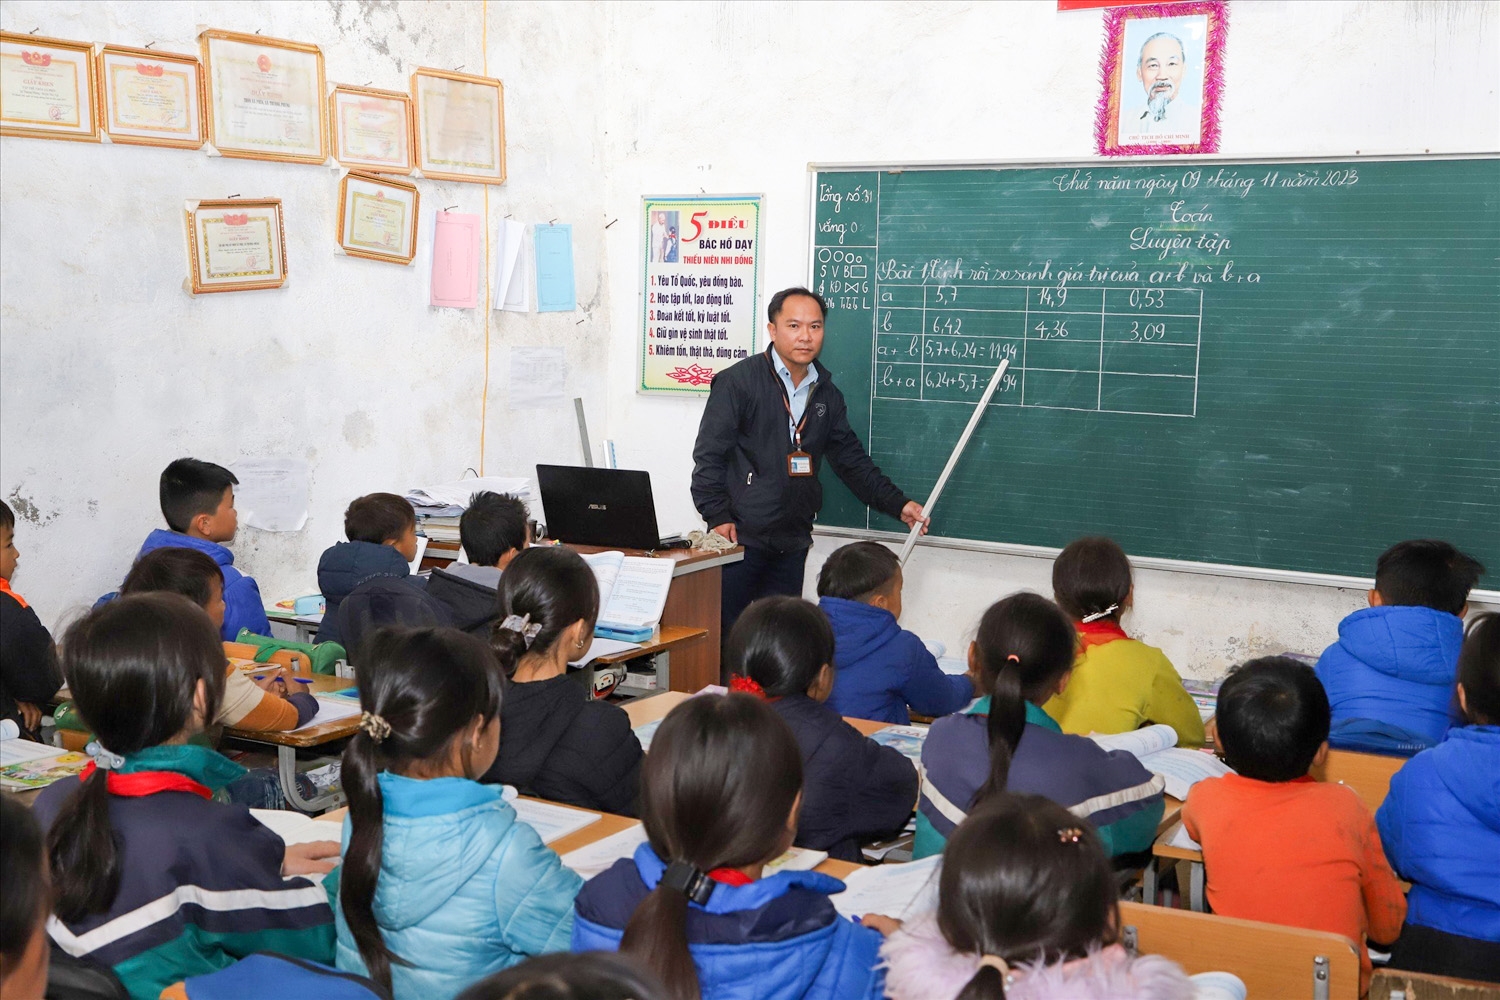 Thầy giáo Nguyễn Đình Nam say mê giảng dạy trong lớp học